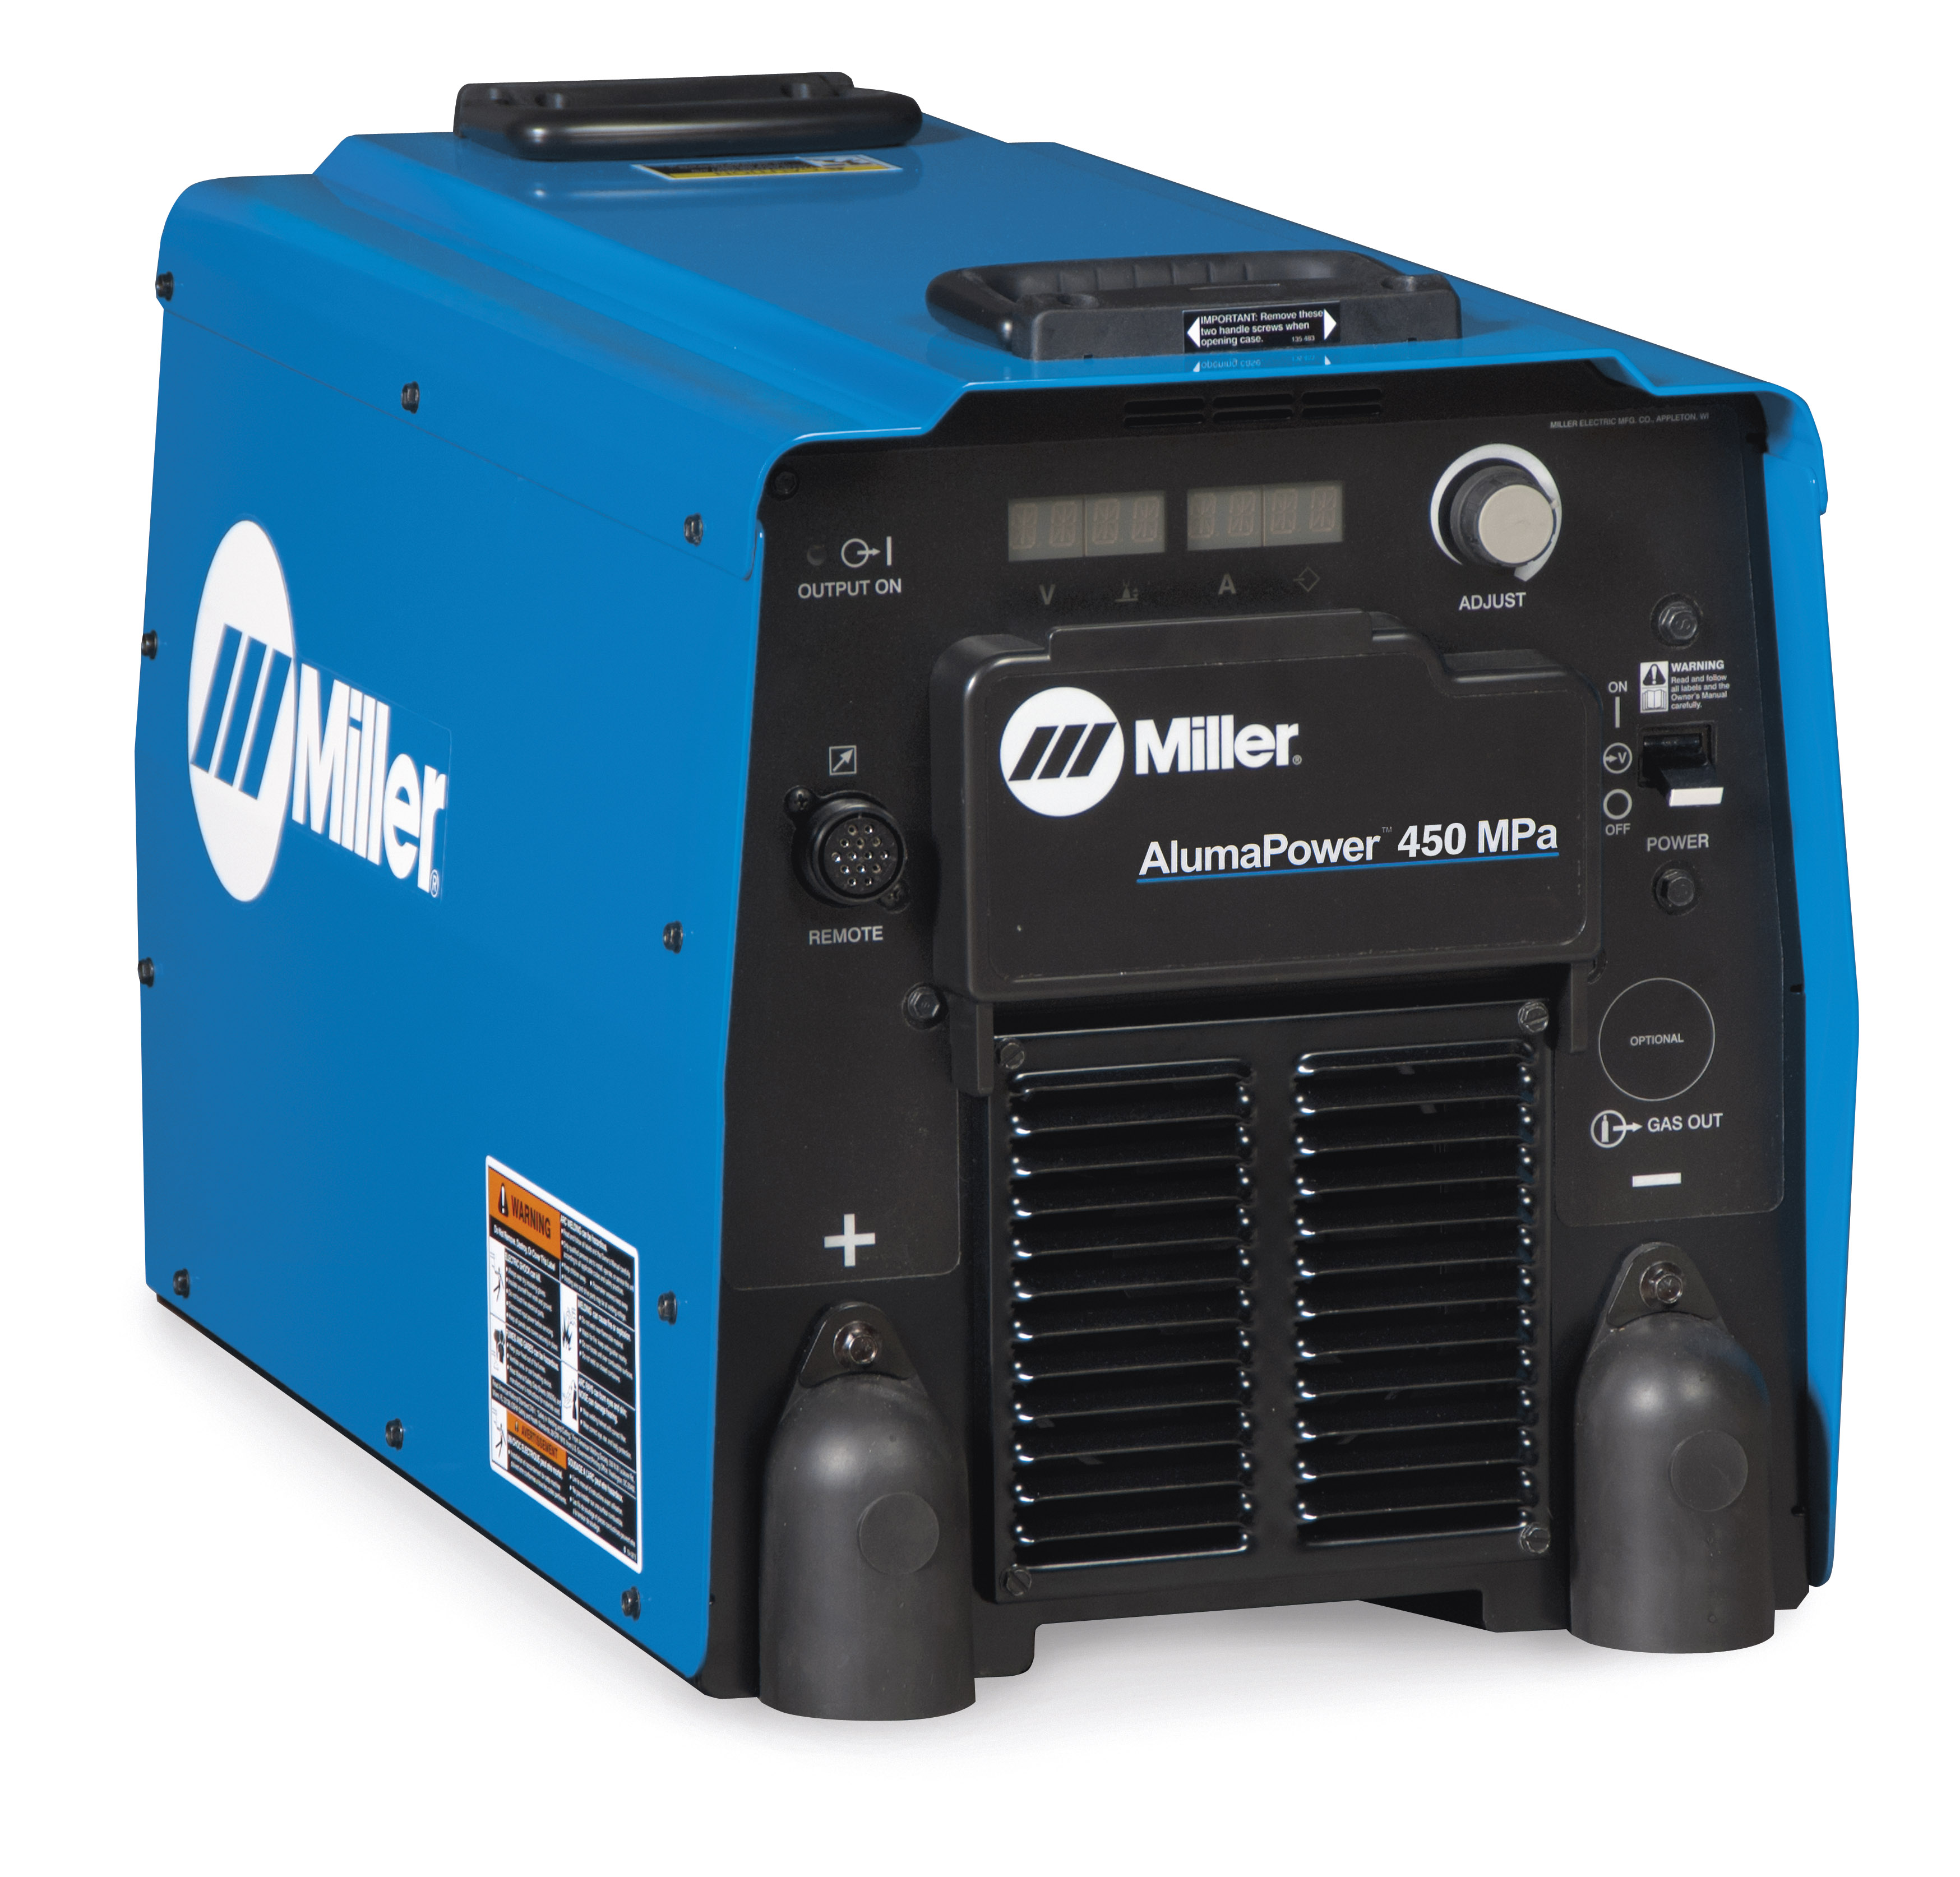 Miller AlumaPower 450 MPa Welder Power Source 230/460 Volt